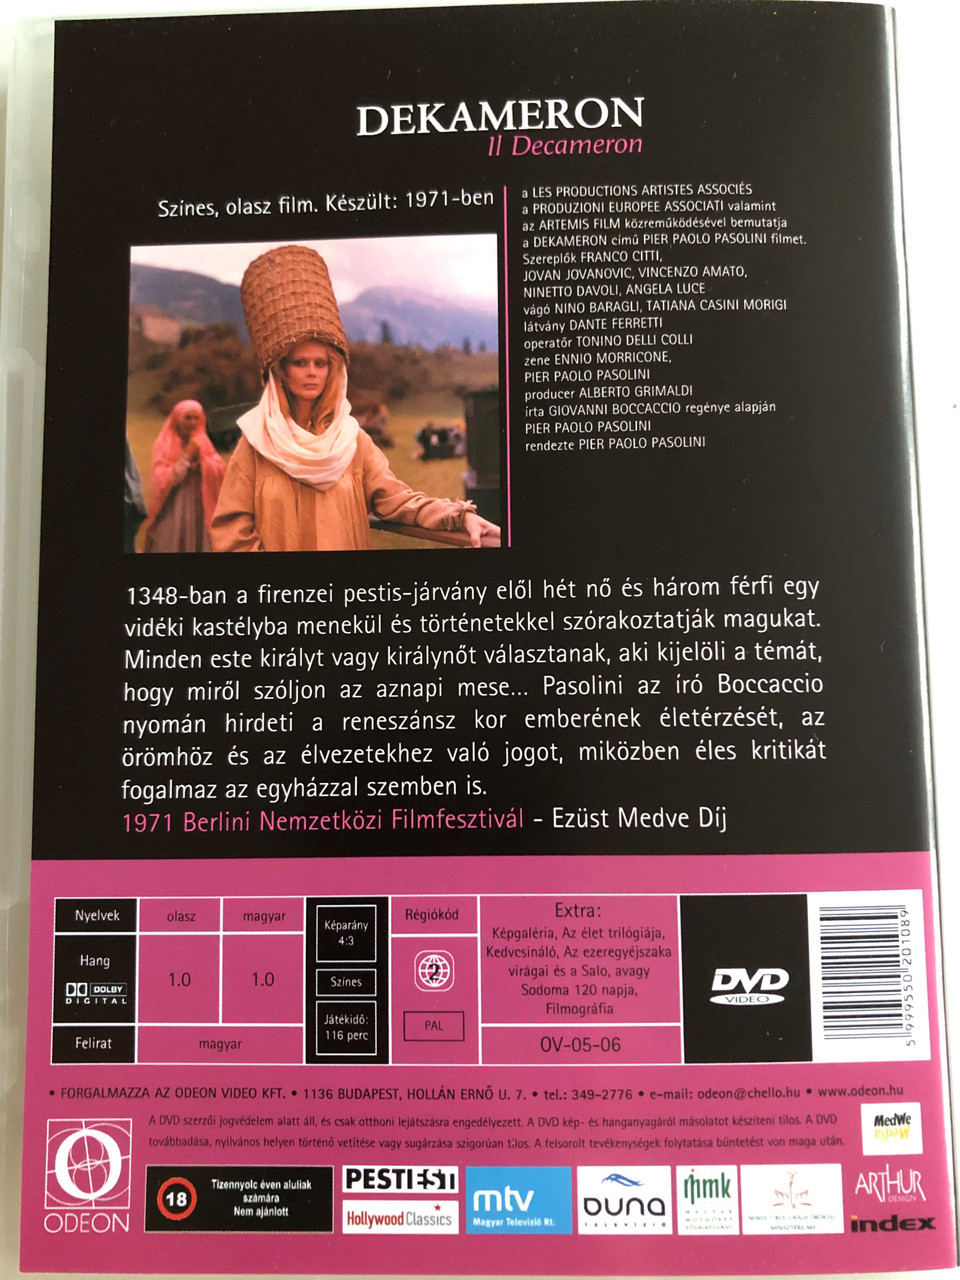 Il Decameron DVD 1971 Dekameron / Directed by Pier Paolo Pasolini / Franco Citti, Ninetto Davoli, Pier Paolo Pasolini - bibleinmylanguage